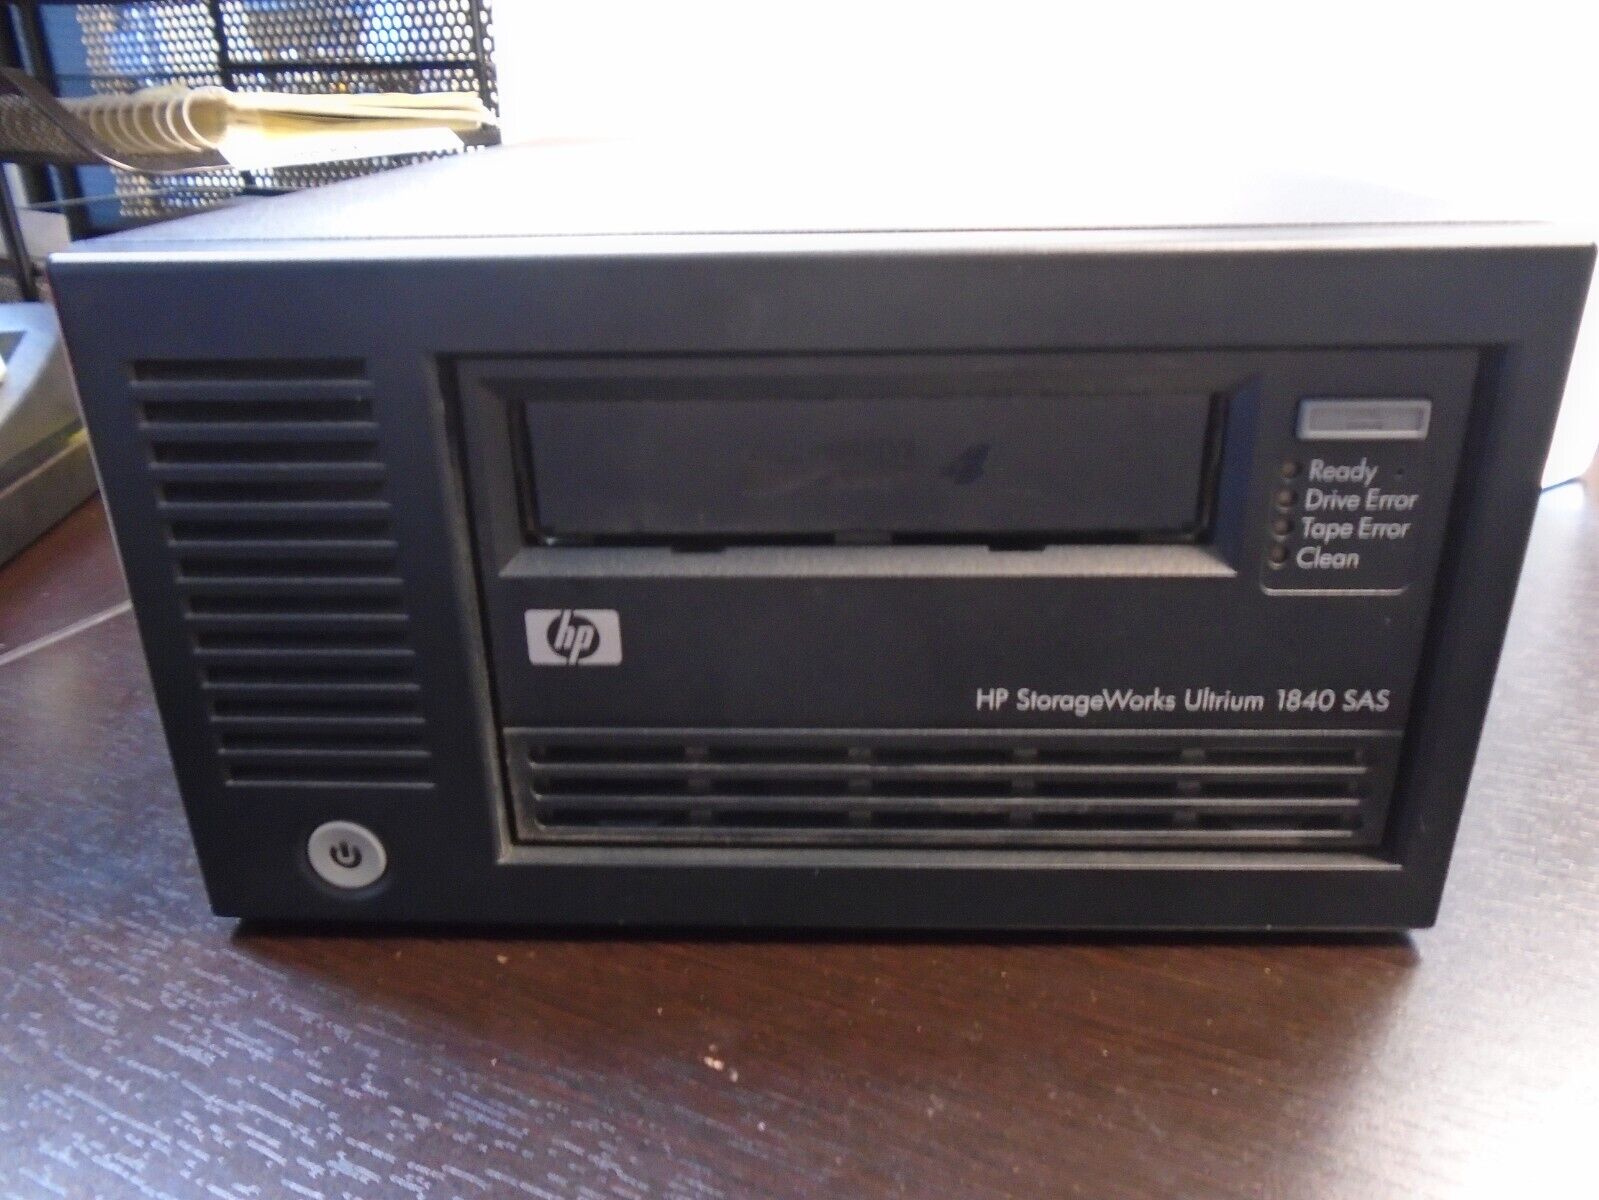 HP Hewlett Packard StorageWorks Ultrium 1840 SAS External Drive